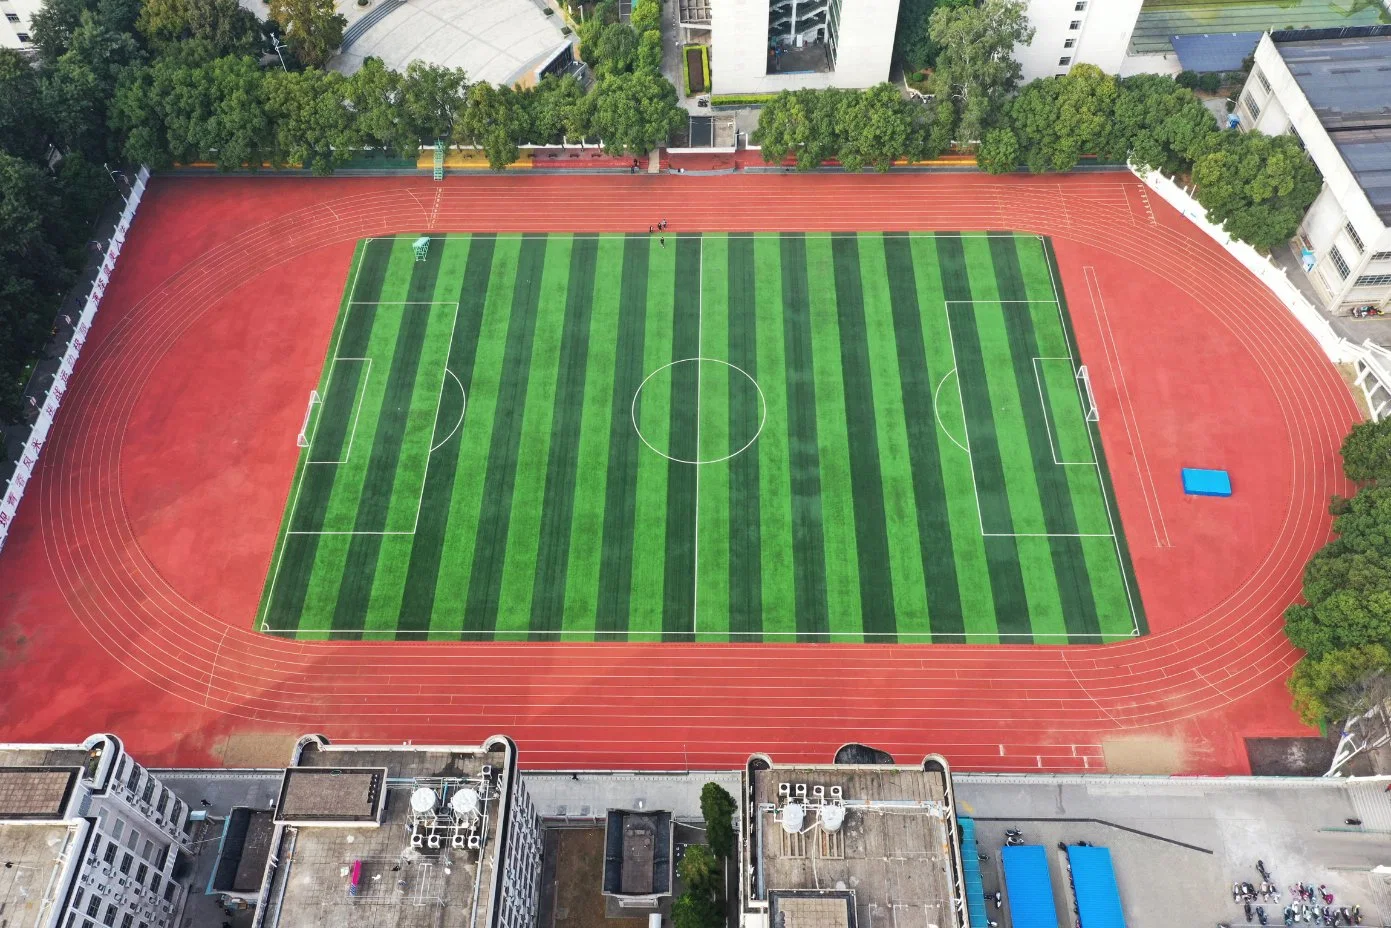 Vente chaude de piste d'athlétisme composite pour revêtement de sol sportif/terrain de jeu avec amortissement.